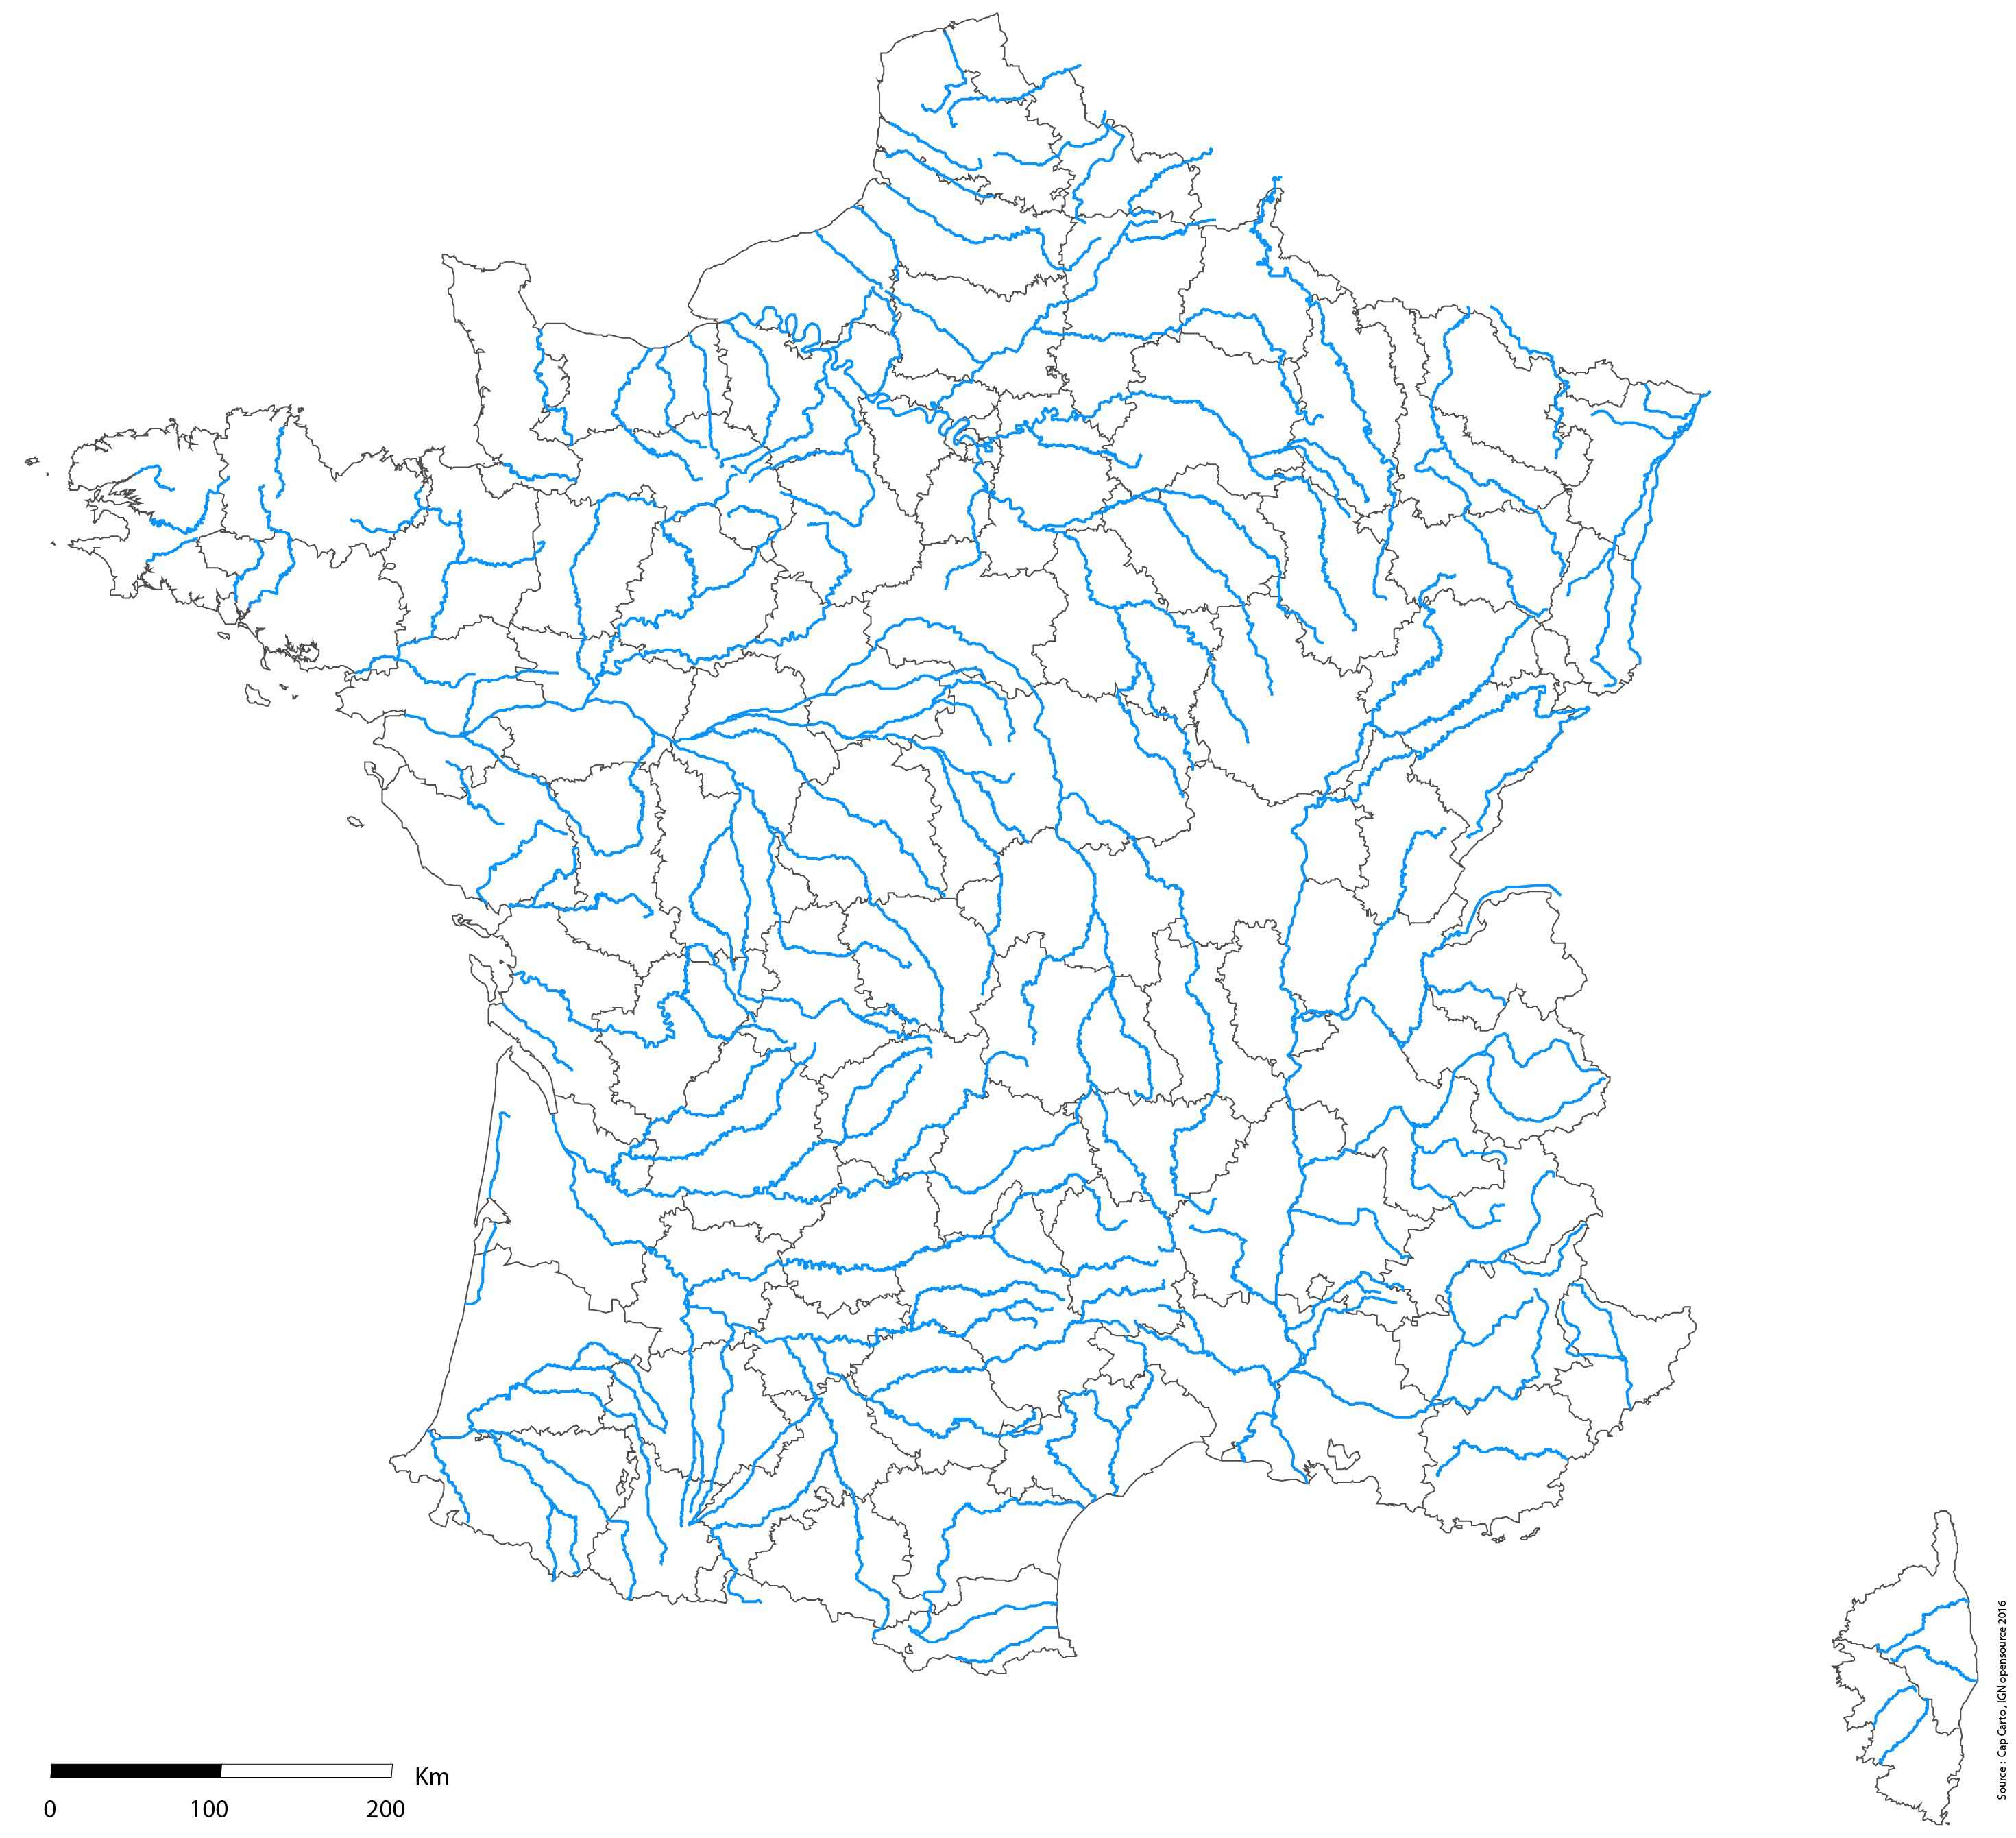 rivieres de france